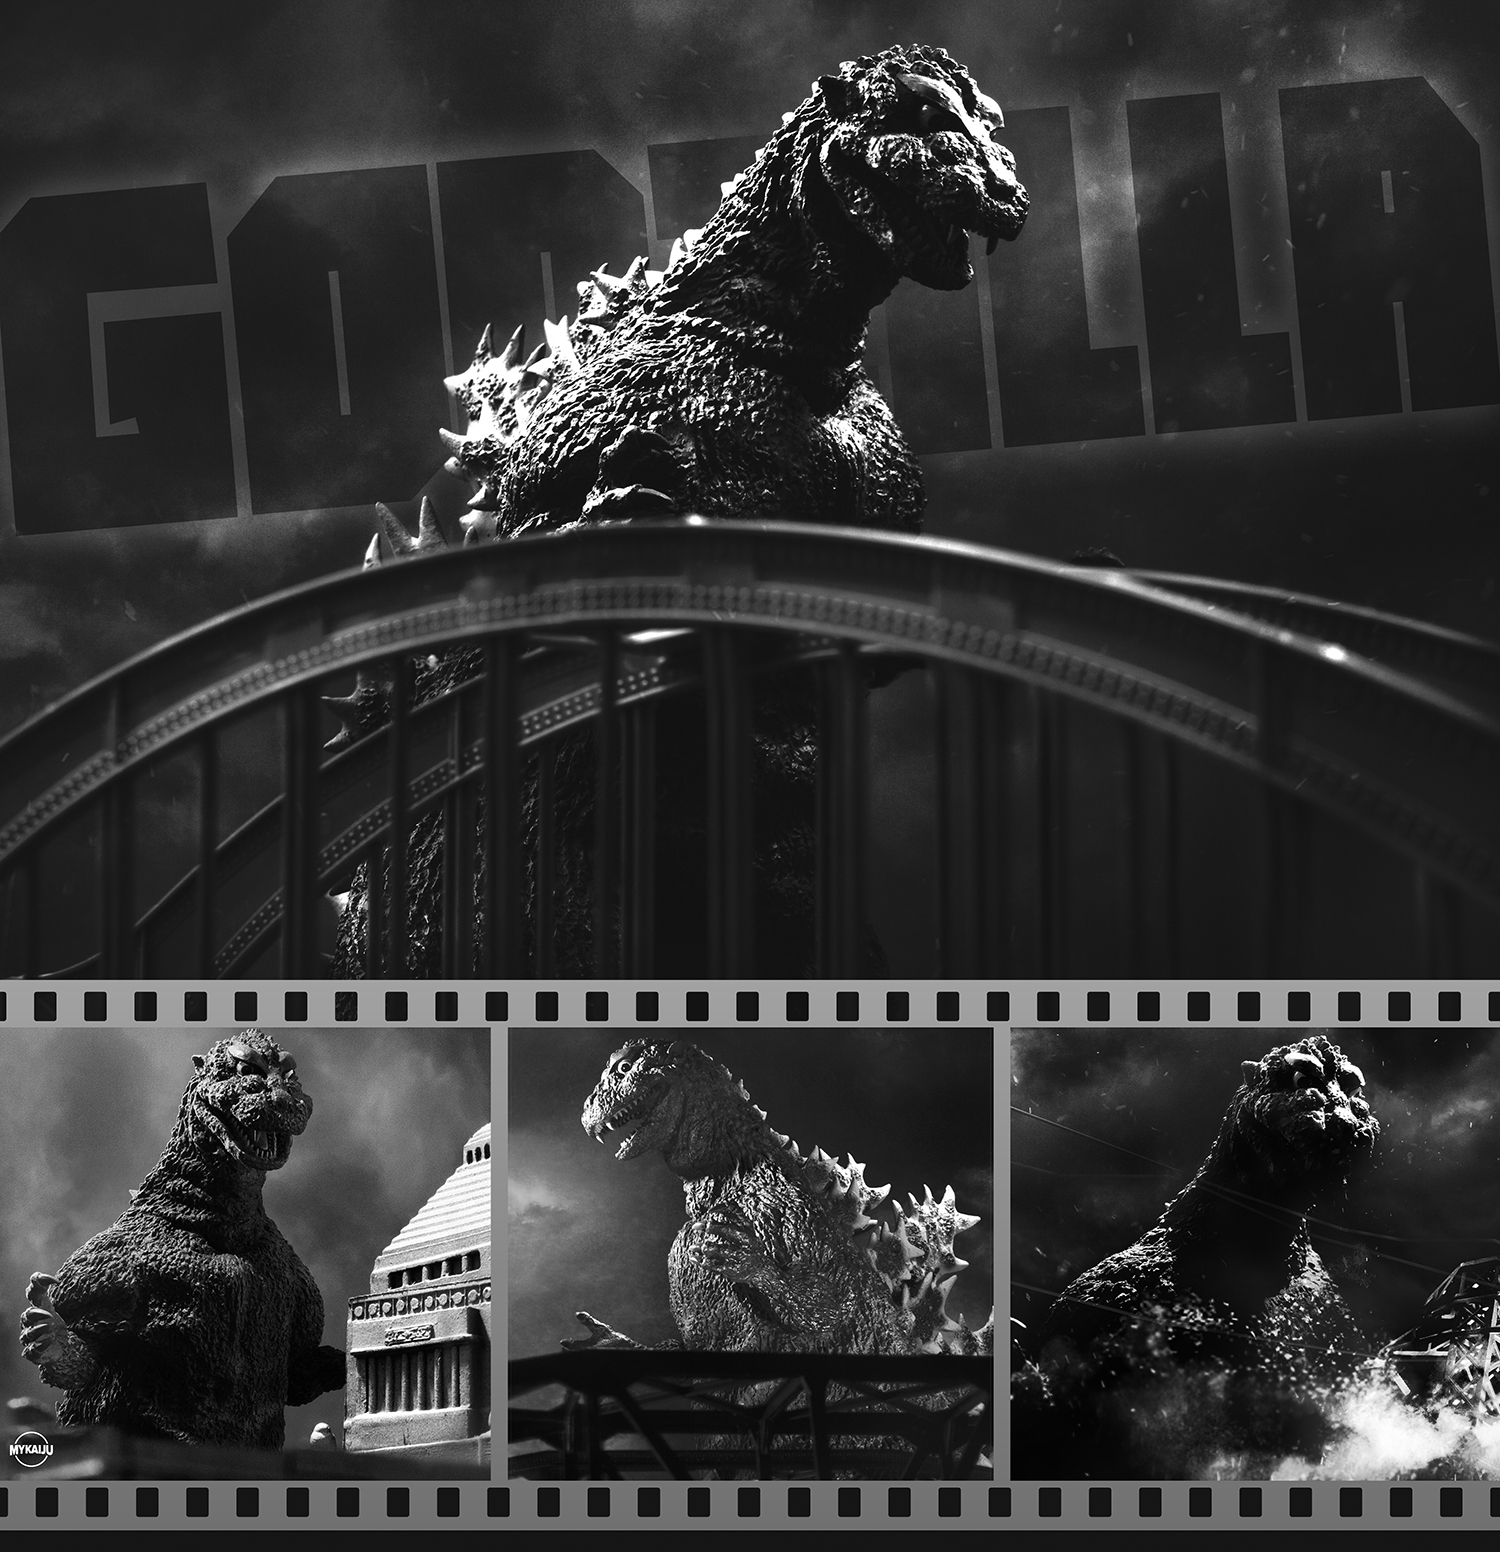 X-Plus Yuji Sakai Godzilla 1954